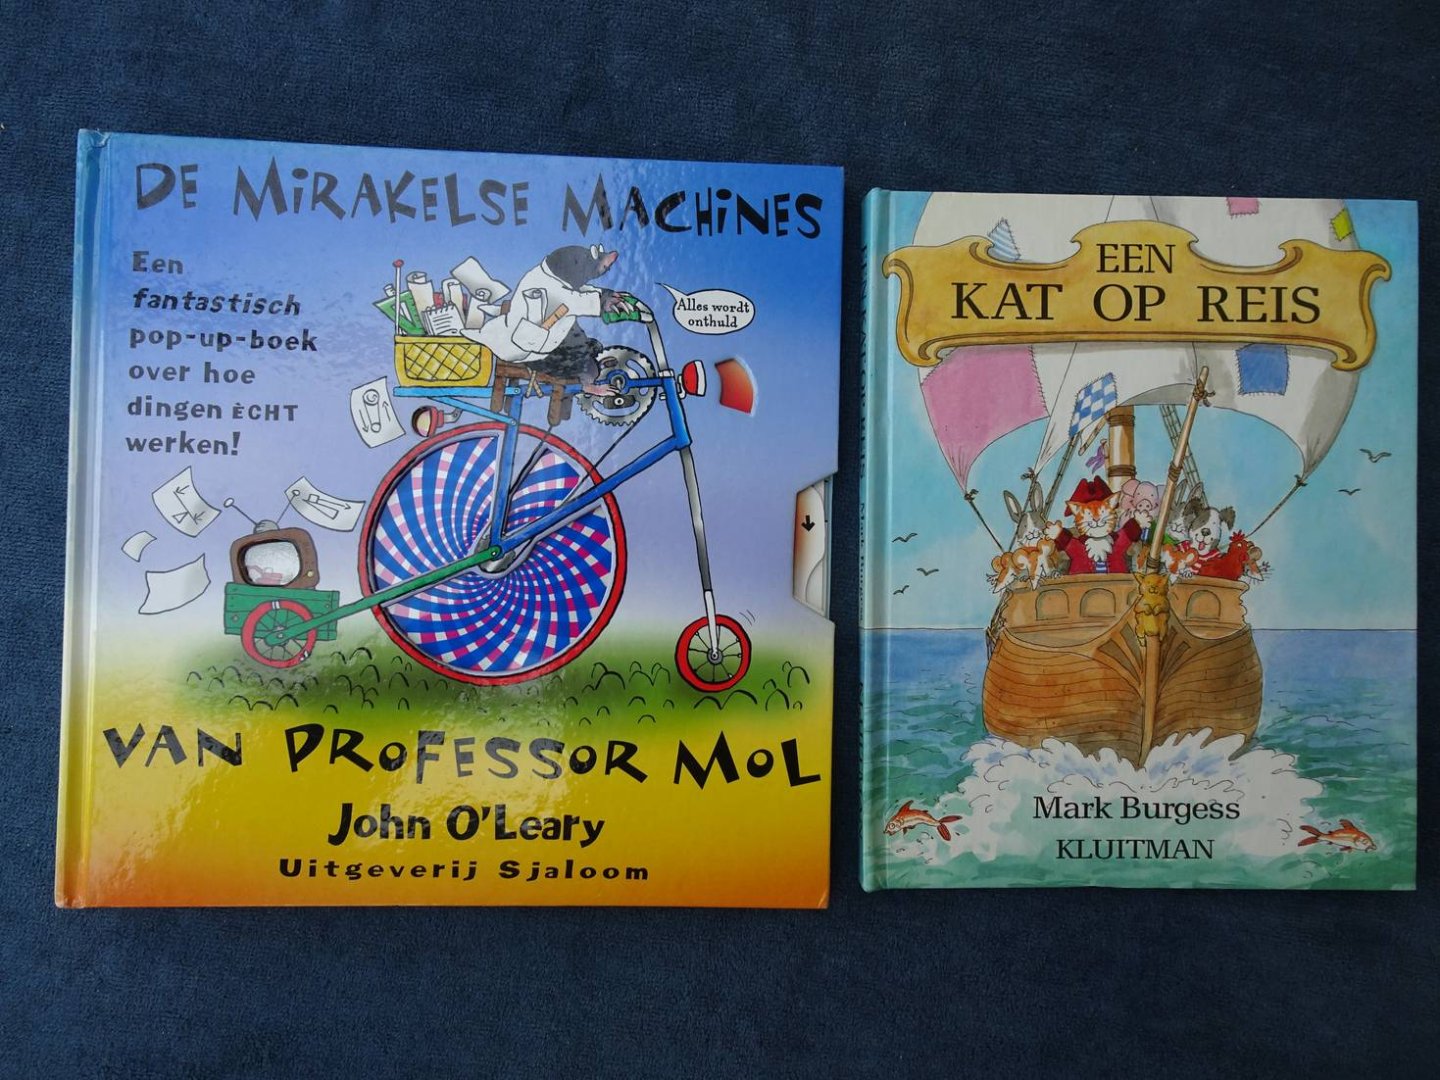 O'Leary, John & Mark Burgess. - Een kat op reis/ De Mirakelse Machines van Professor Mol. Een fantastisch pop-up-boek over hoe dingen ècht werken! 2 stuks.